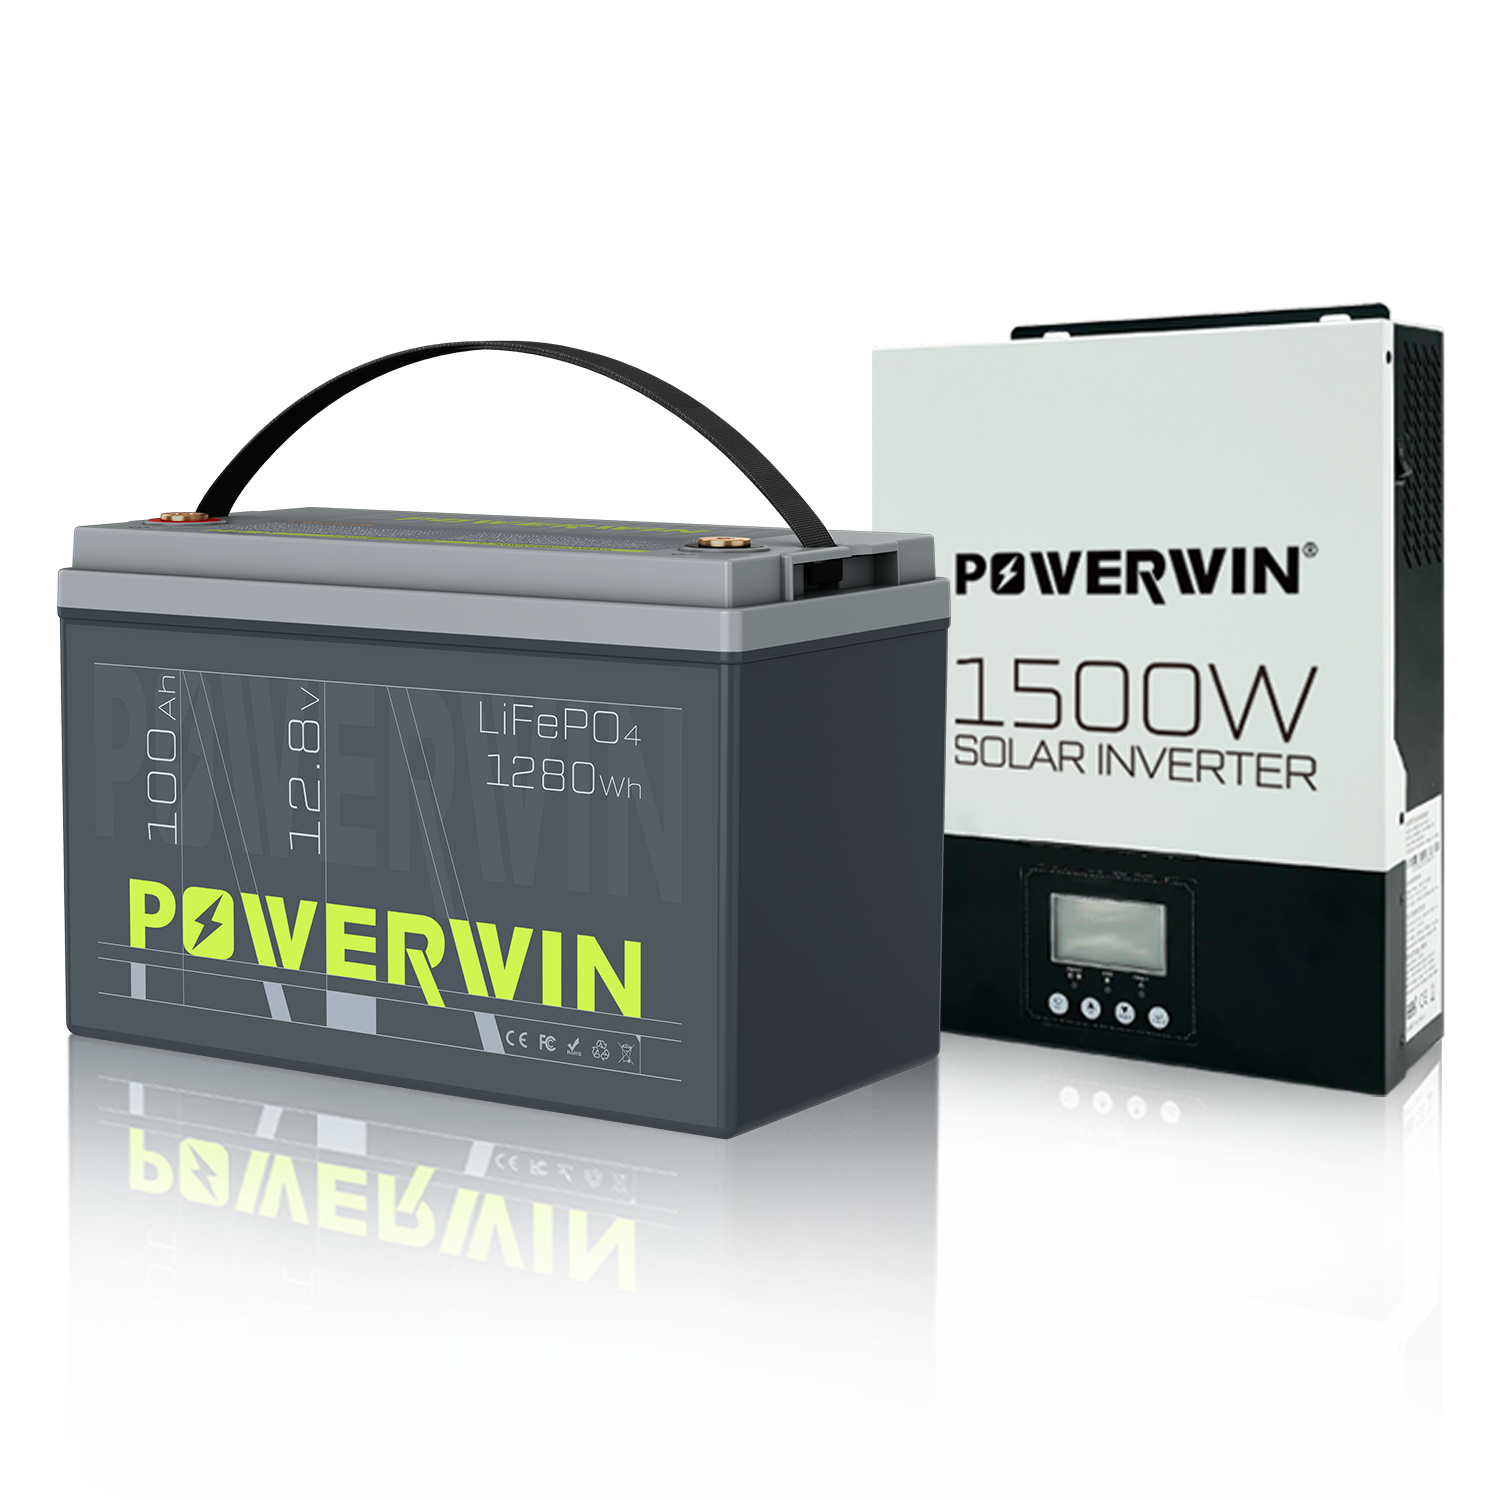 POWERWIN 12.8V 100Ah LiFePO4 + 1500W Solar Inverter 220-240V Set